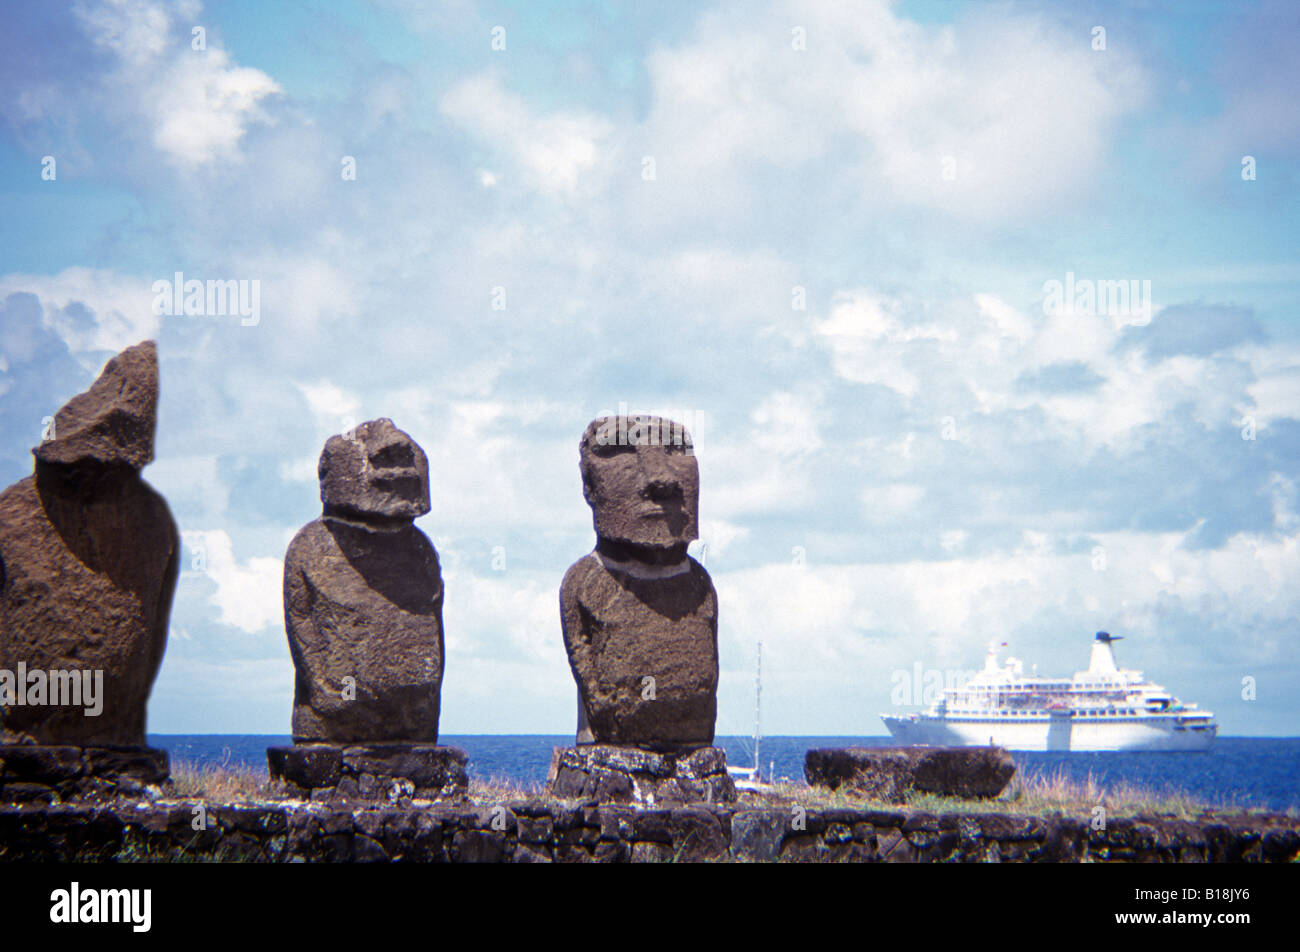 MV scoperta la nave di crociera con tre moai su piattaforma ahu in primo piano Vai Ura, Isola di Pasqua, Cile Foto Stock